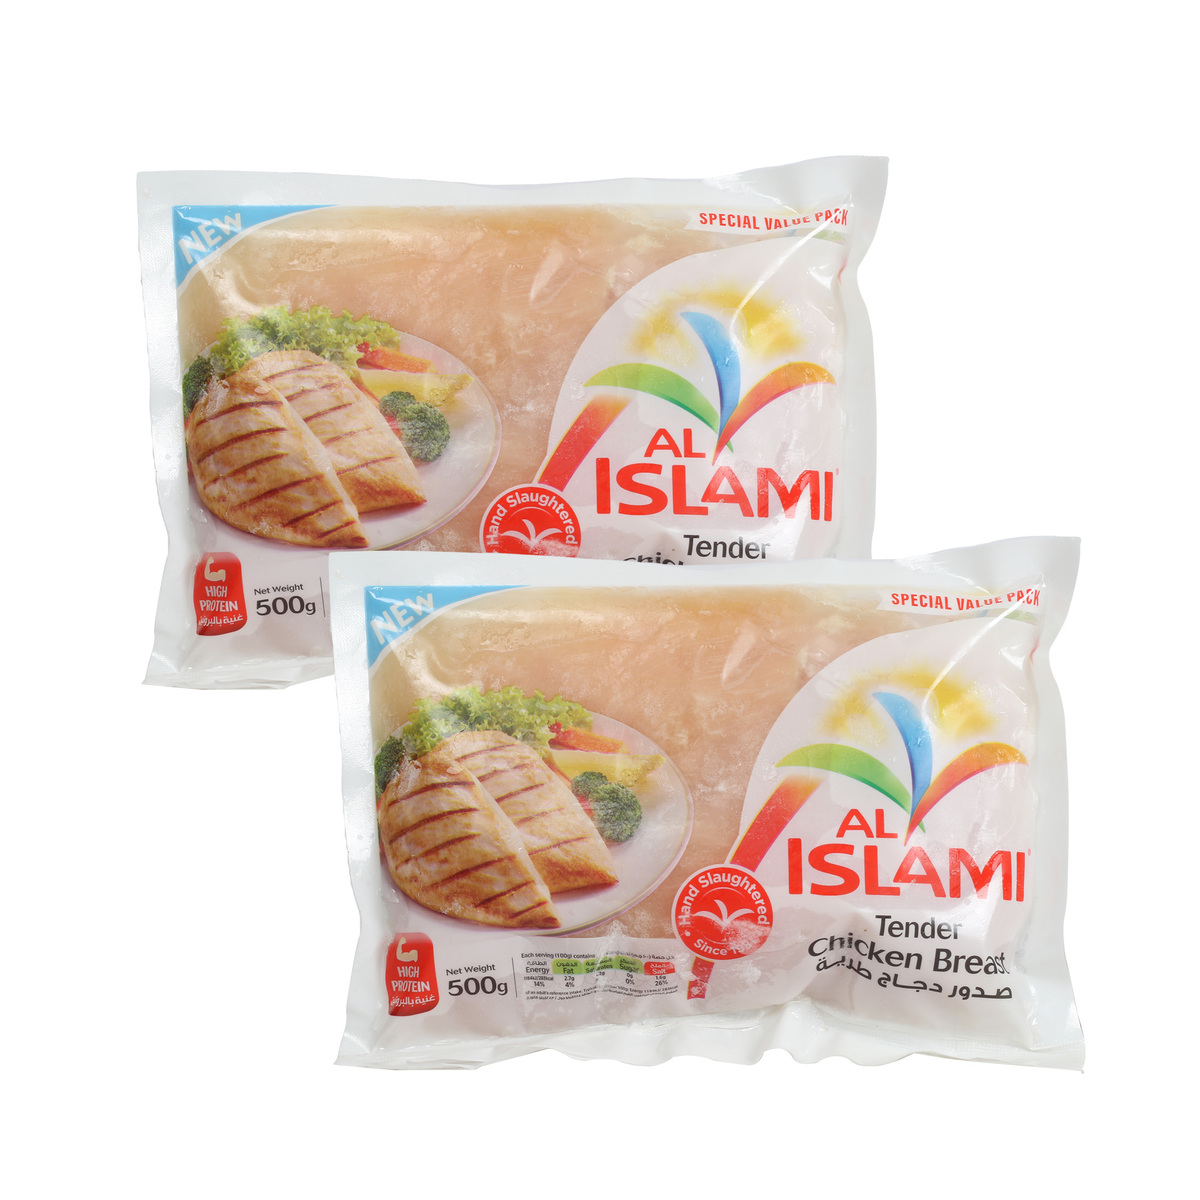 Al Islami Tender Chicken Breast Value Pack 2 x 500g